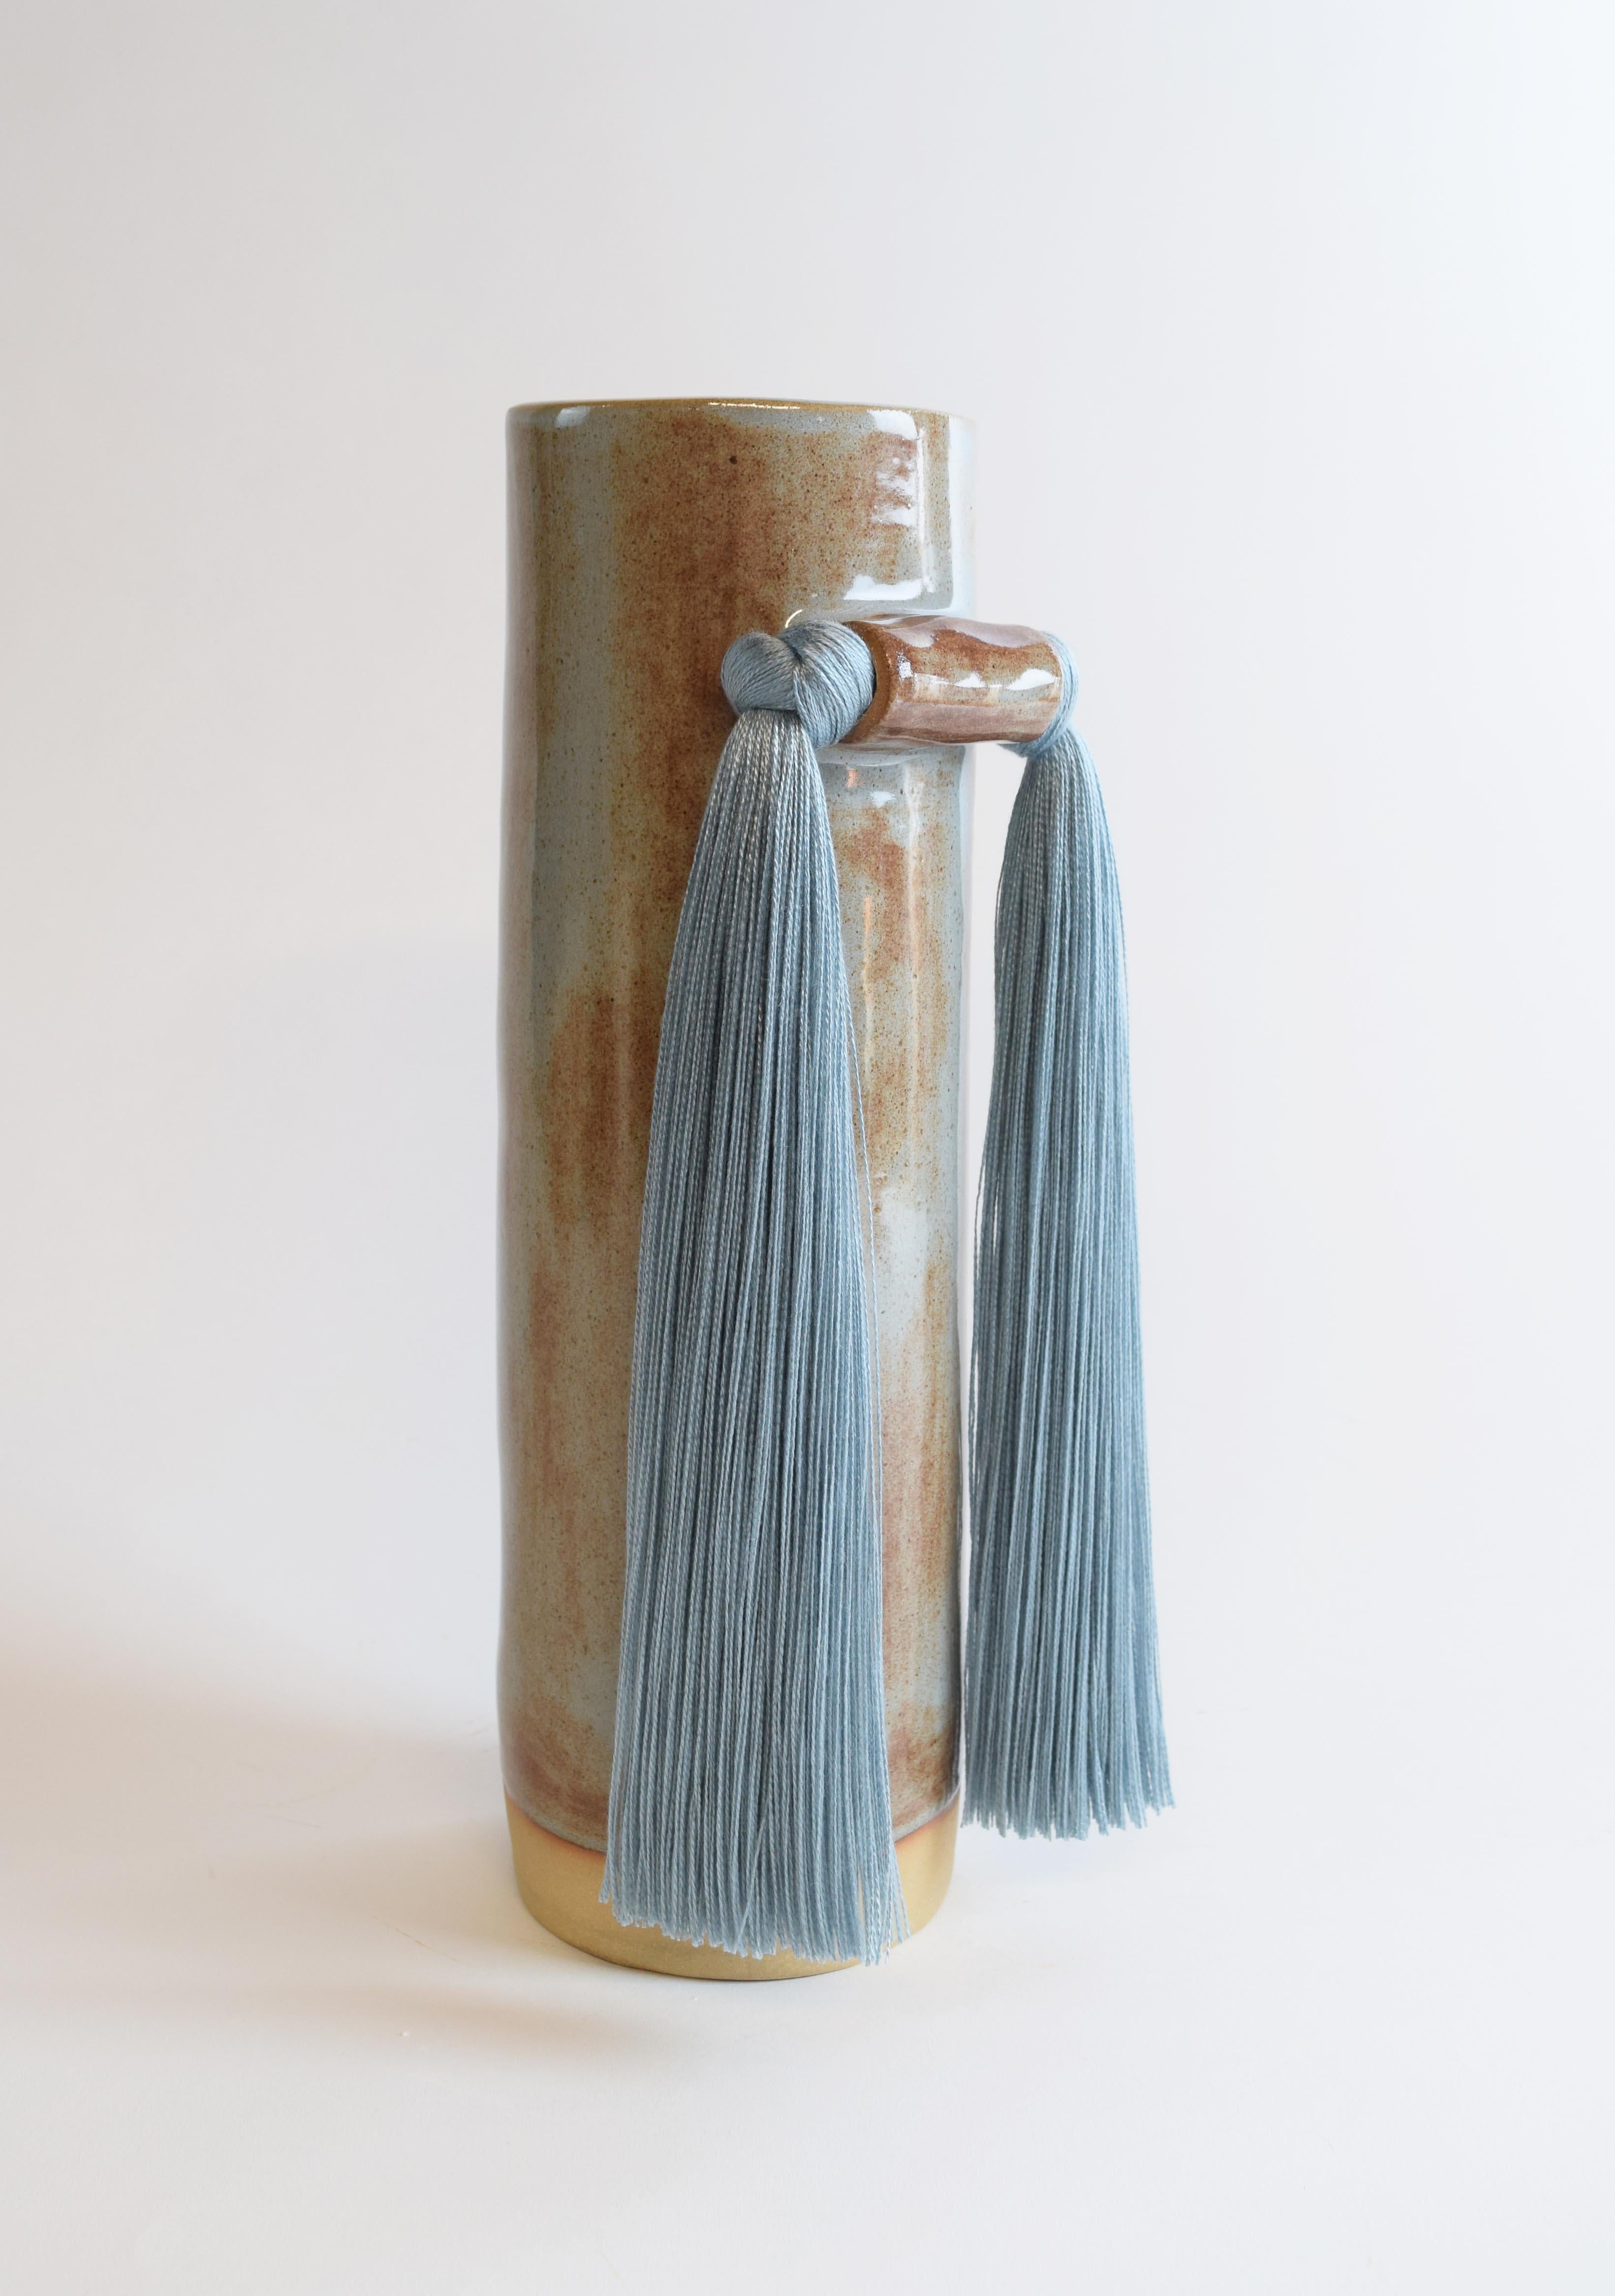 Vase #531 de Karen Gayle Tinney

Une symétrie tranquille et des détails de frange à l'avant font de ce vase un objet parfait à exposer sur une étagère ou une table.

Grès beige formé à la main avec une glaçure bleu shino. Détail de frange en tencel